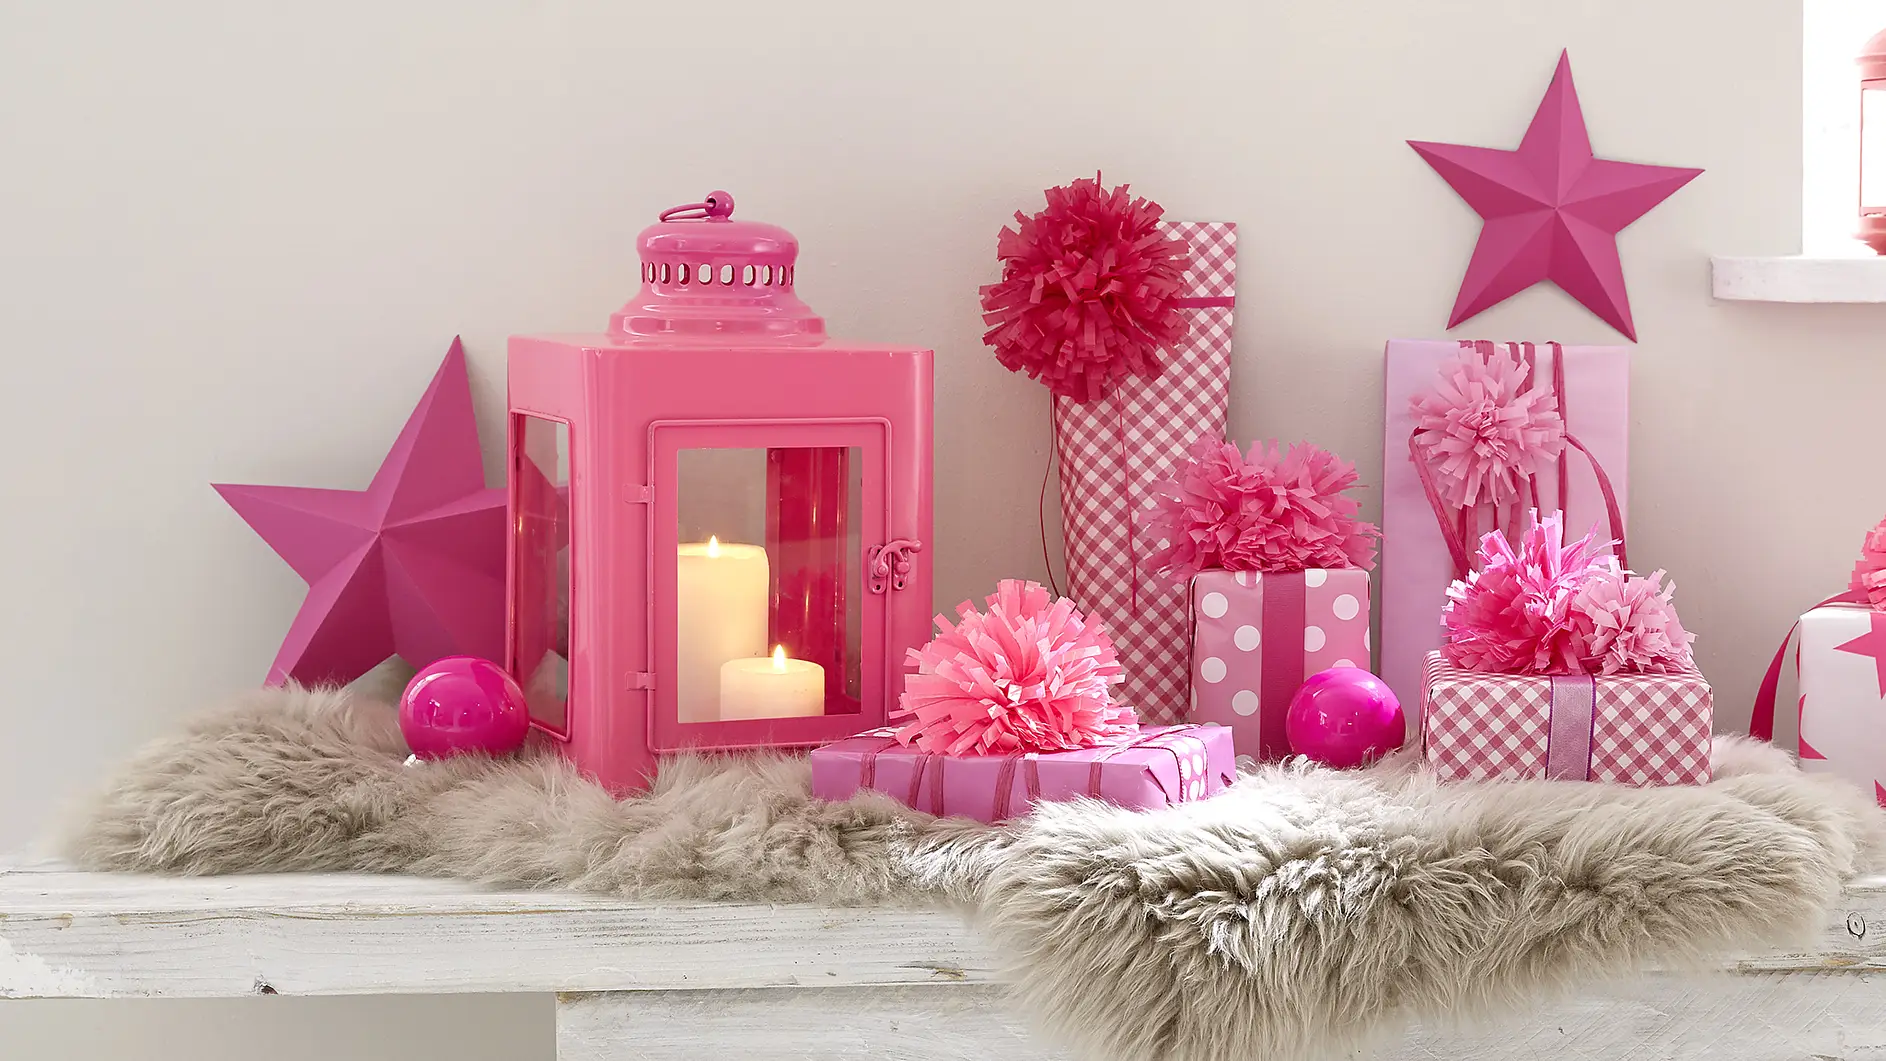 Wer seinen Lieben zu Weihnachten rosige Zeiten bescheren möchte, packt die Pakete in pink-weißes Papier ein und verziert sie mit prächtigen Pompons!